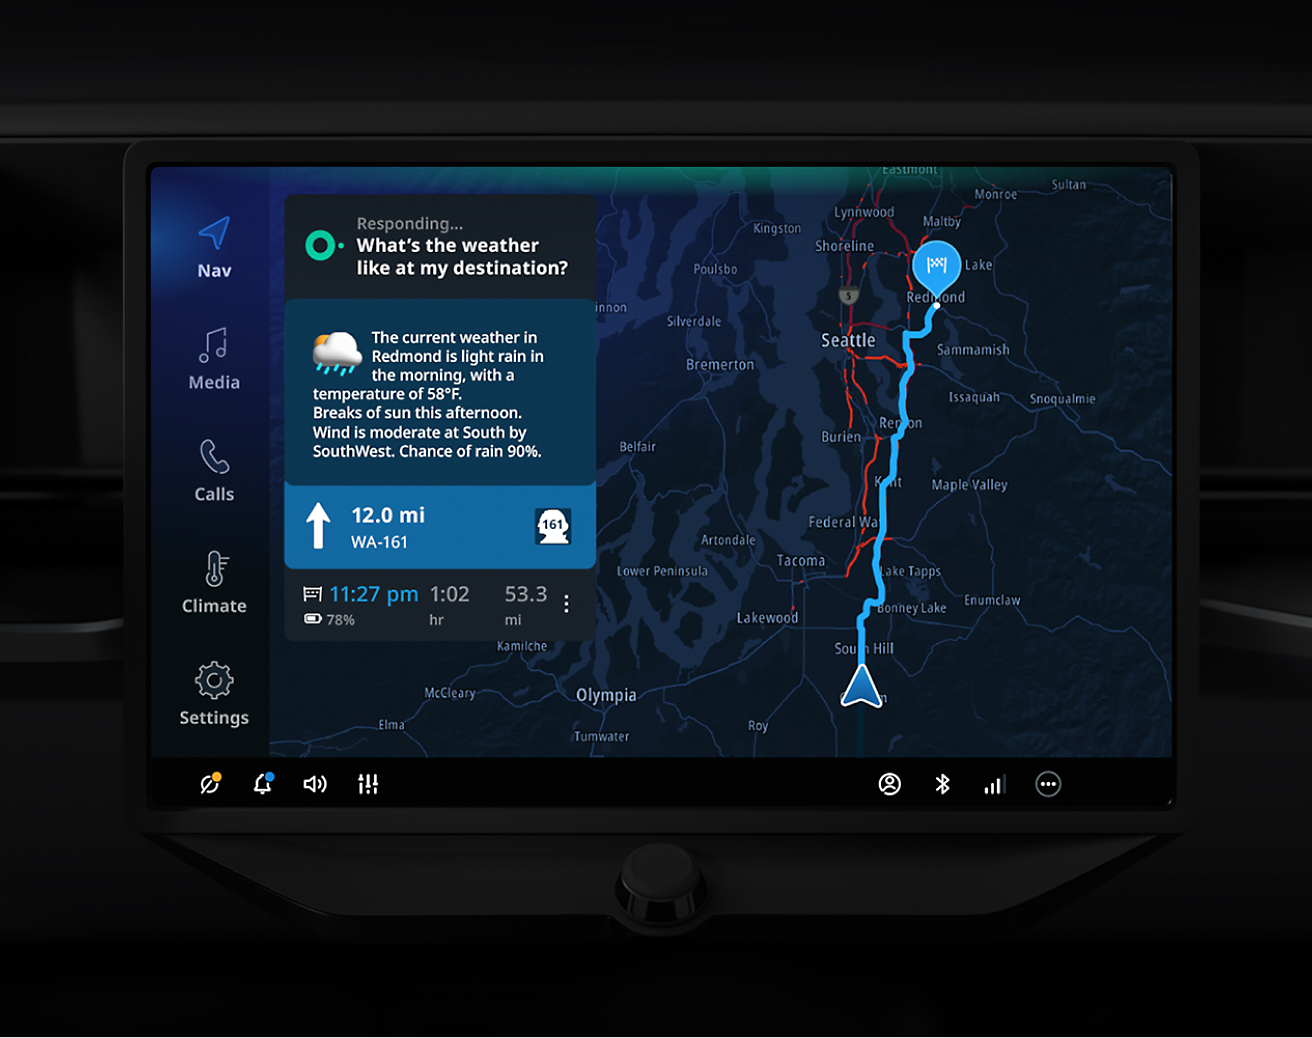 汽车的触摸屏显示显示了导航地图，其中包含西雅图地区的天气预报和各种控制设置。